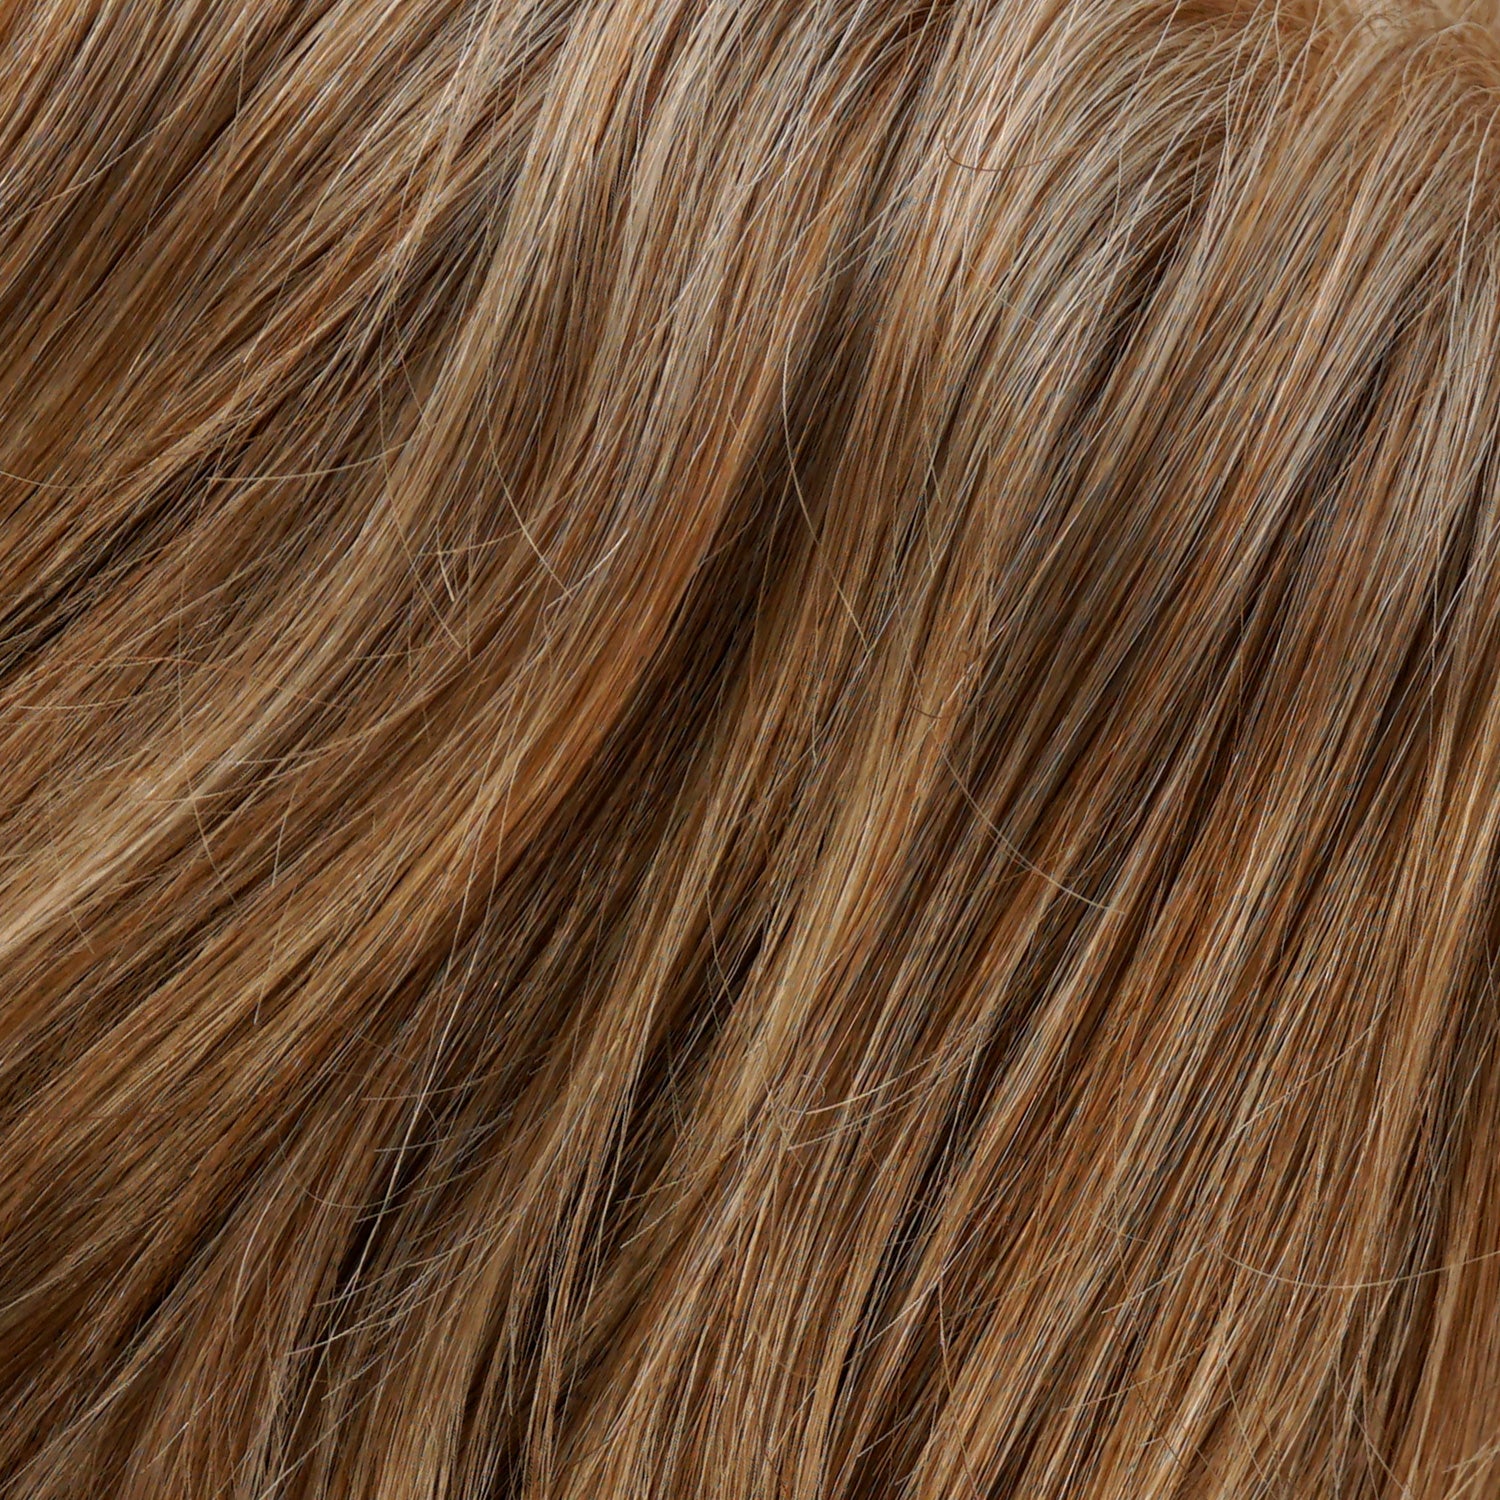 Perruque Cheveux Blonds Synthetiques Jon Renau Allure Couleur 27t613f